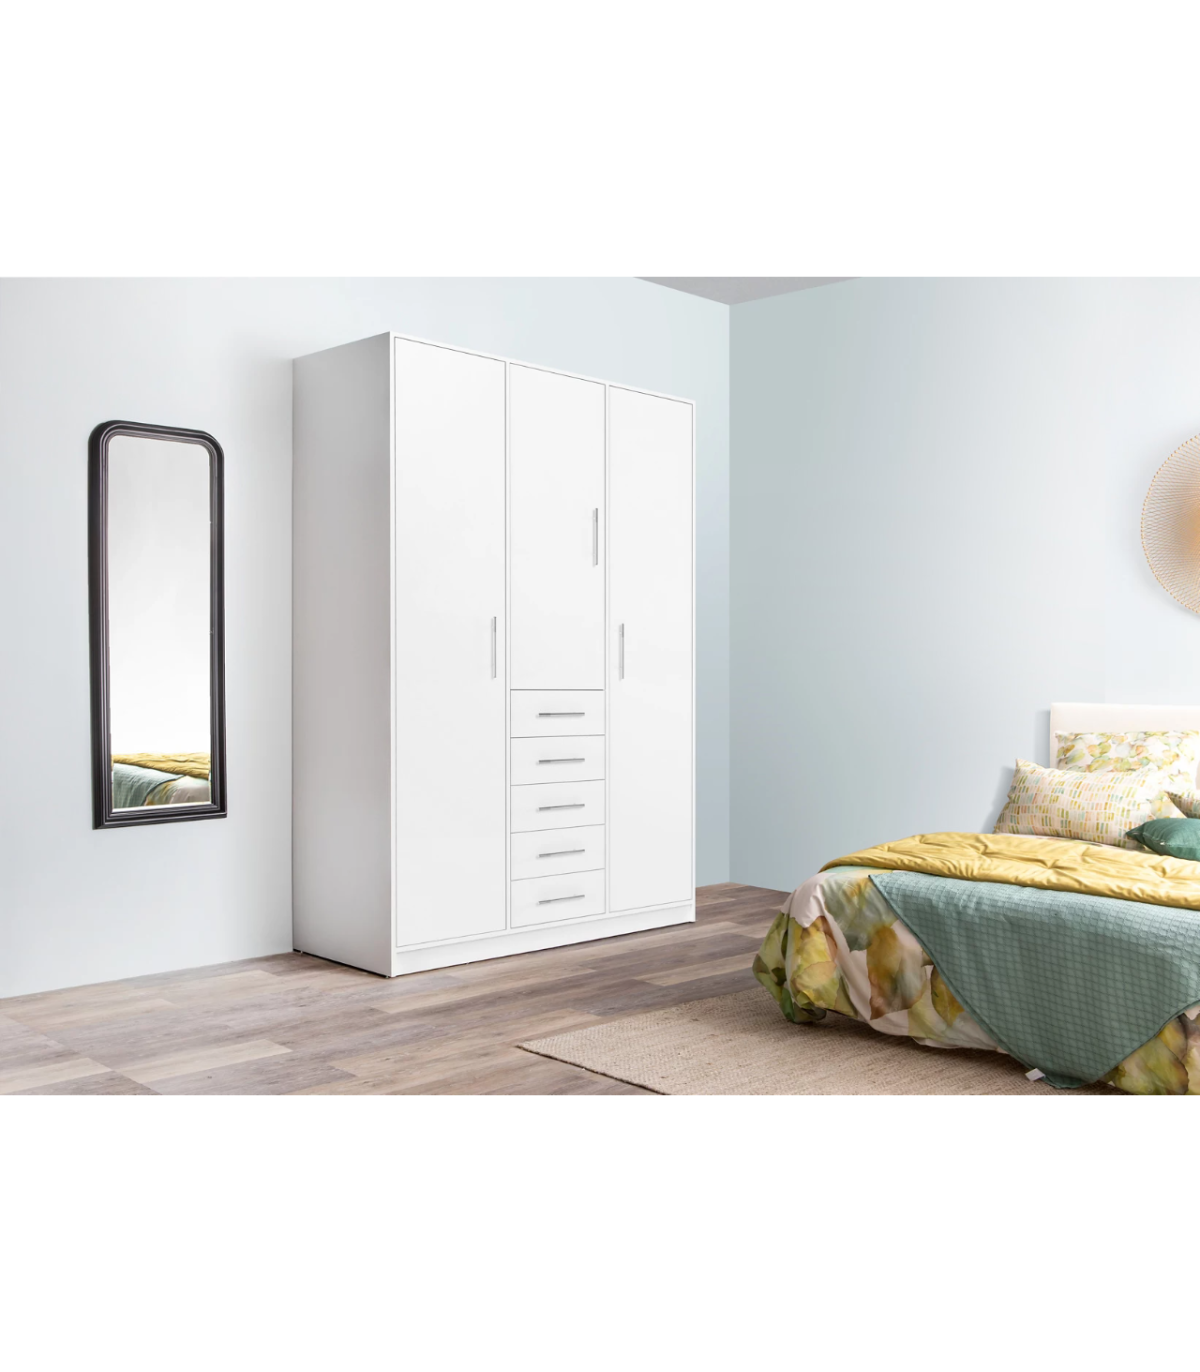 Armarios dormitorio baratos y modernos